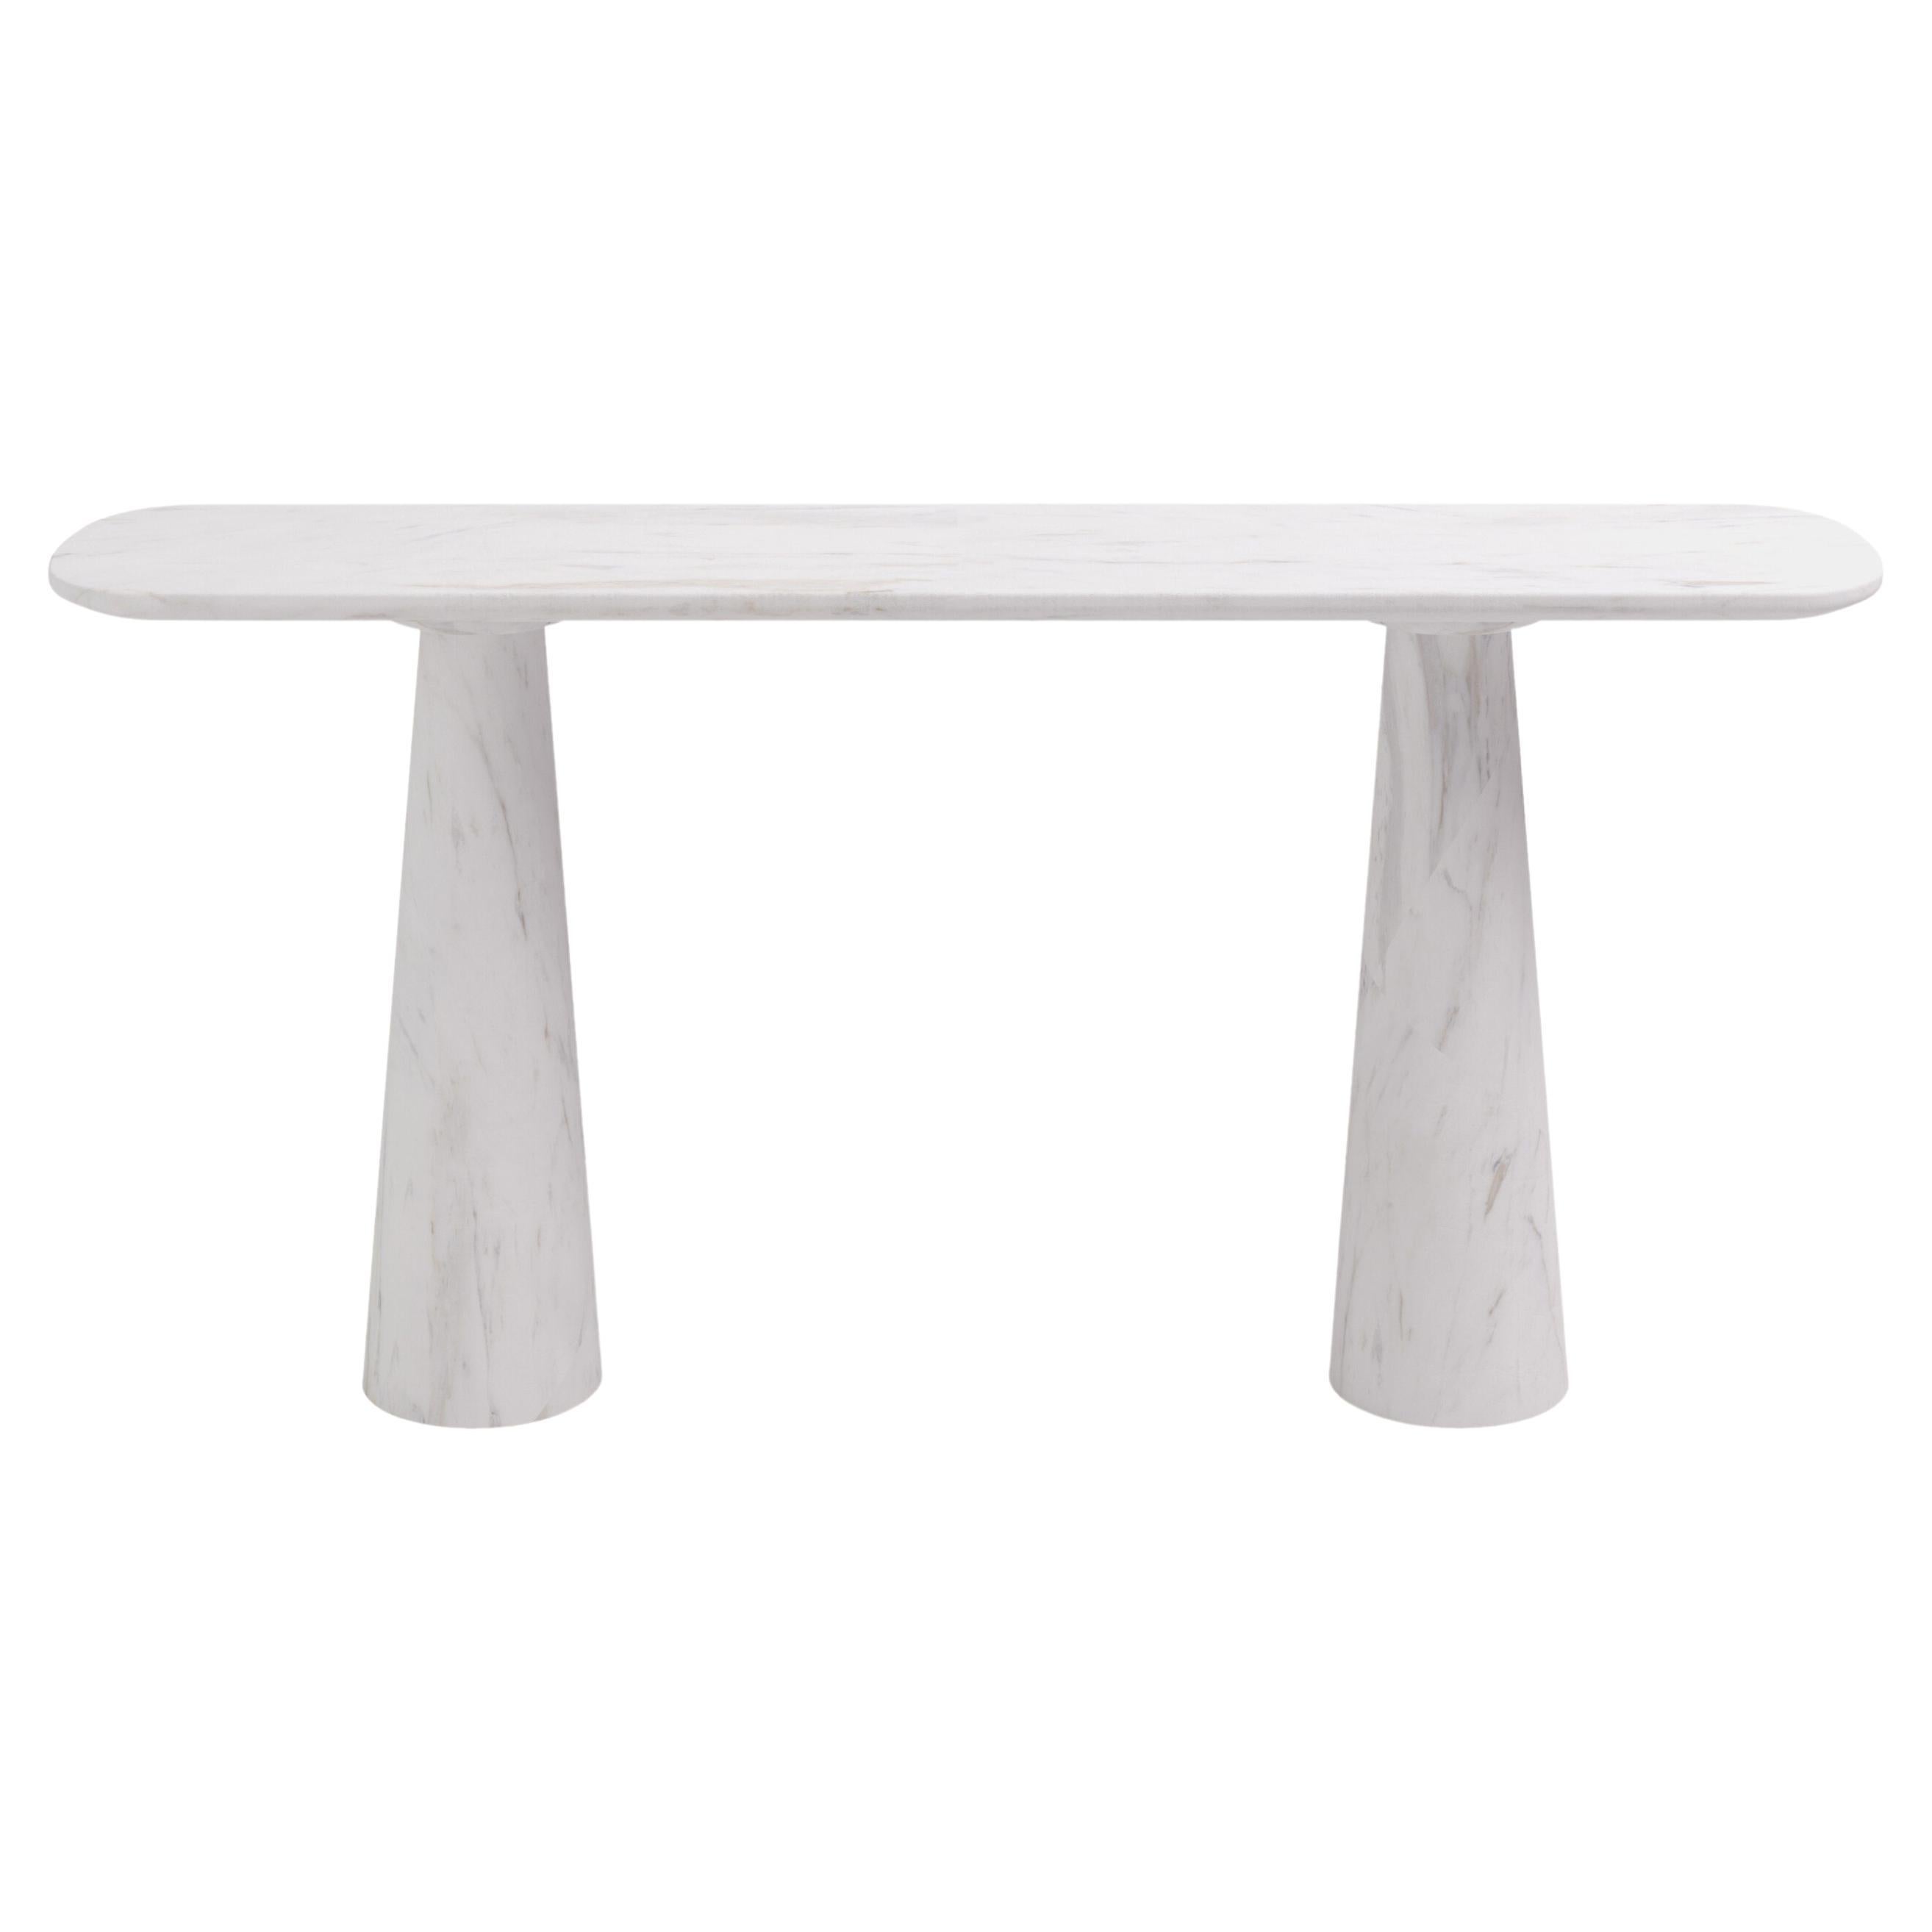 FORM(LA) Cono Console Table 60”L x 15”W x 33”H Volakas White Marble For Sale